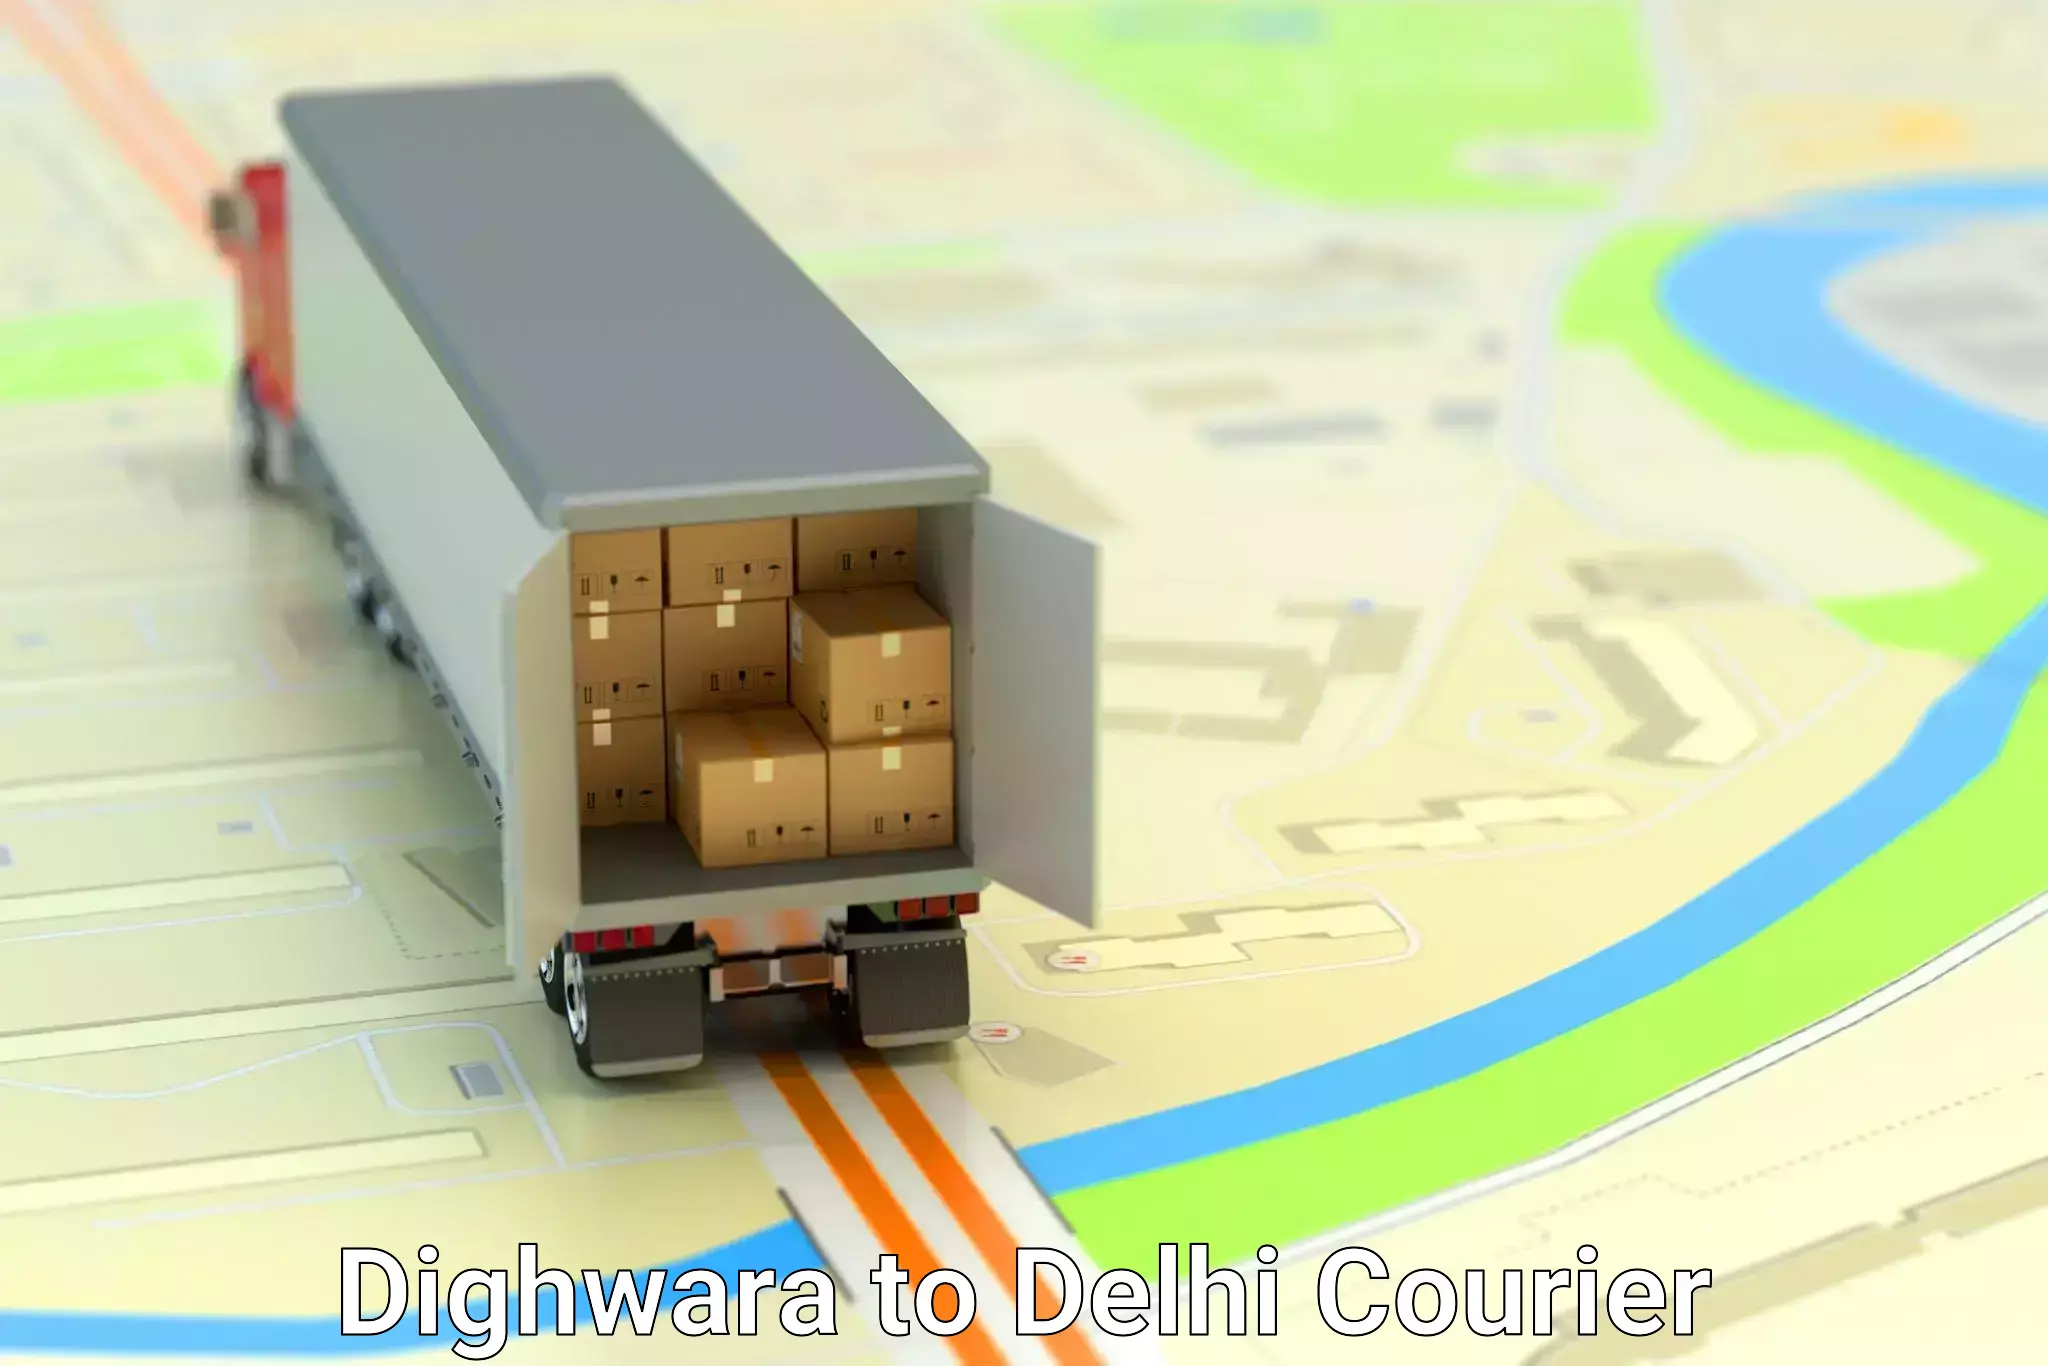 Furniture delivery service in Dighwara to Jamia Millia Islamia New Delhi